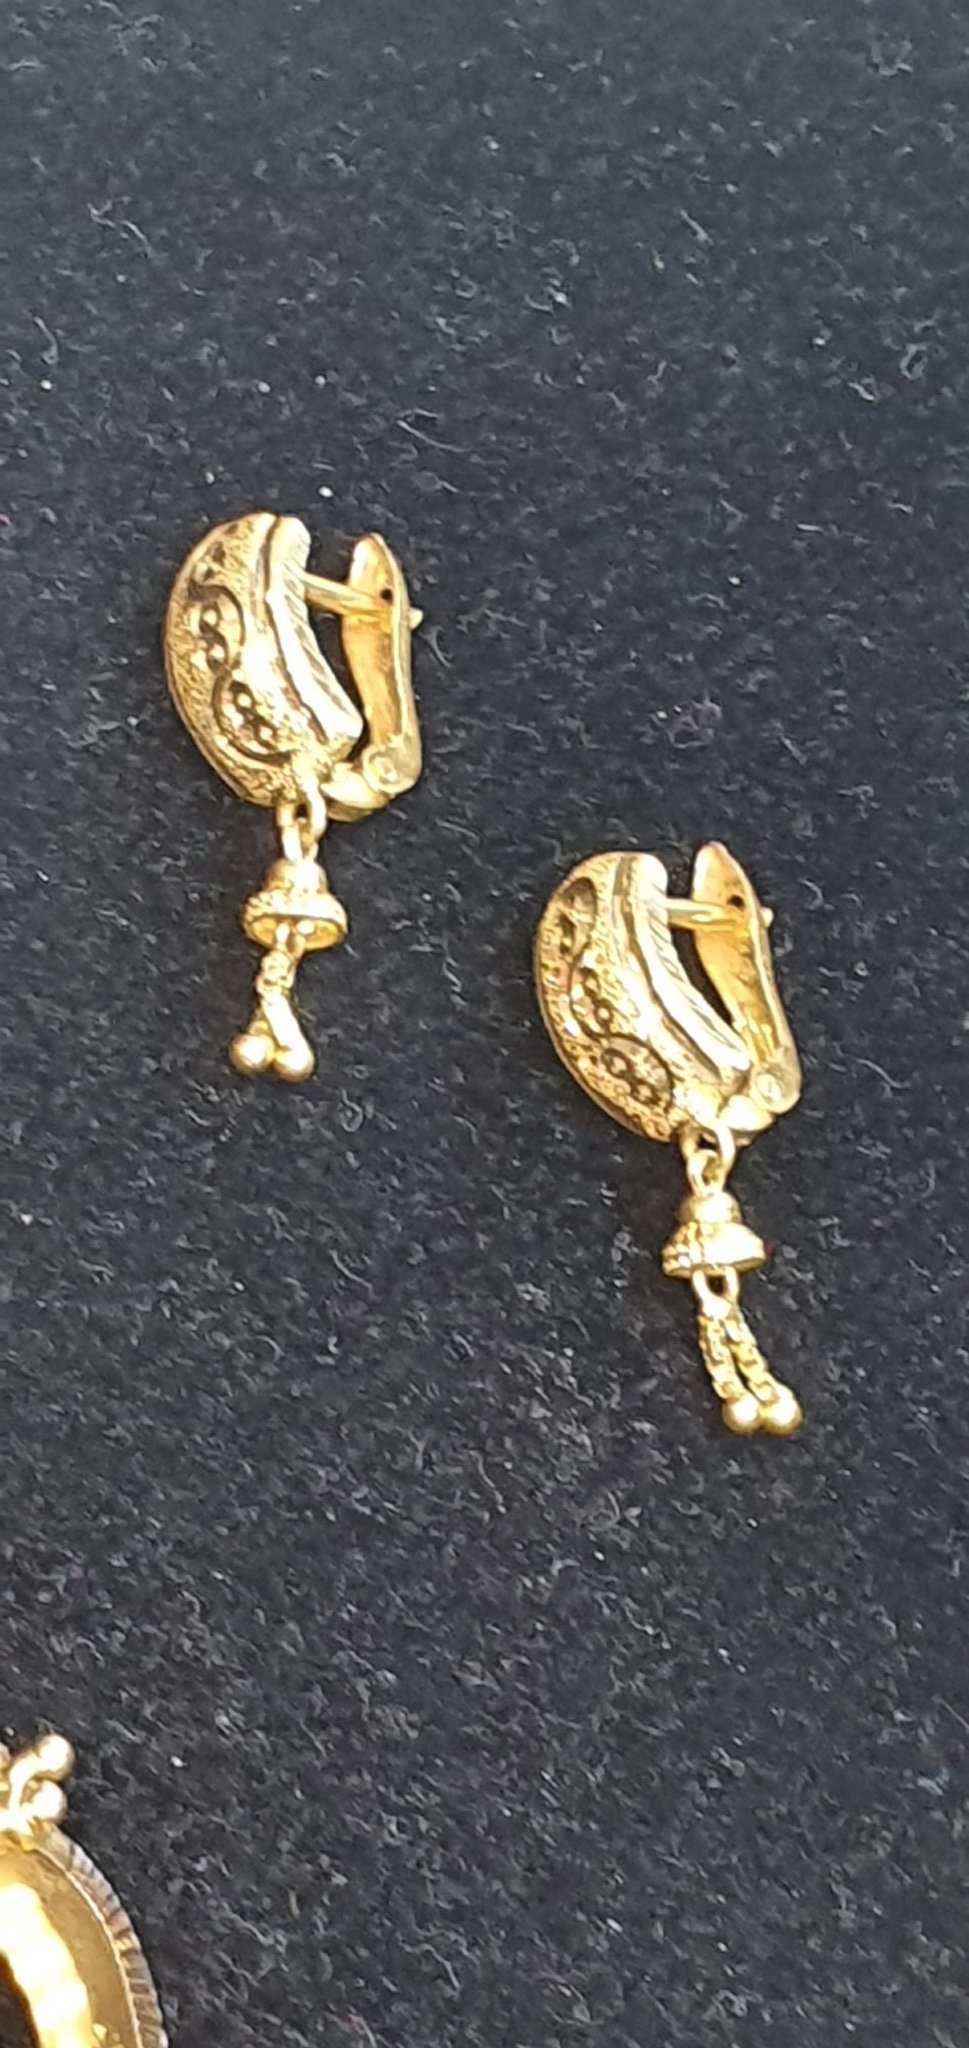 New latest jhala design earrings design party wear #trending earrings #gold  earrings #fancy earrings - YouTube